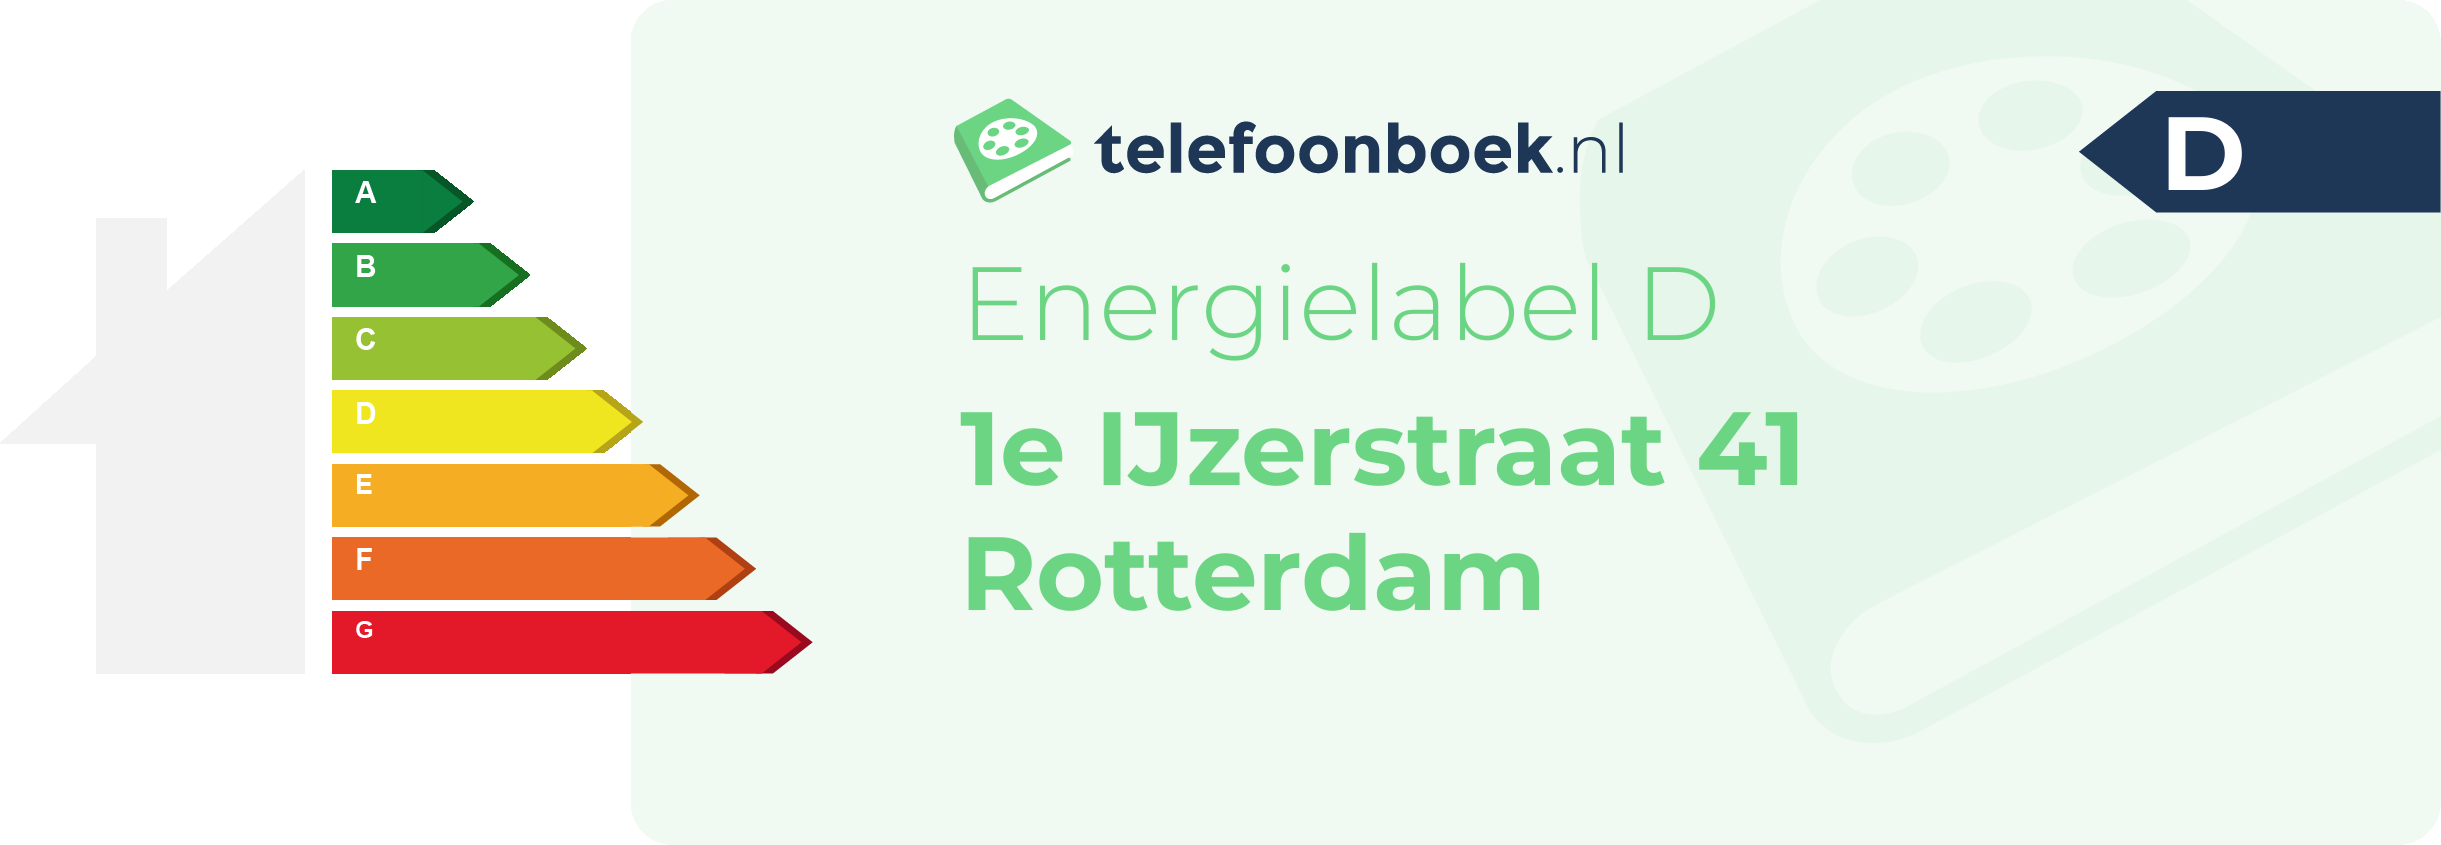 Energielabel 1e IJzerstraat 41 Rotterdam